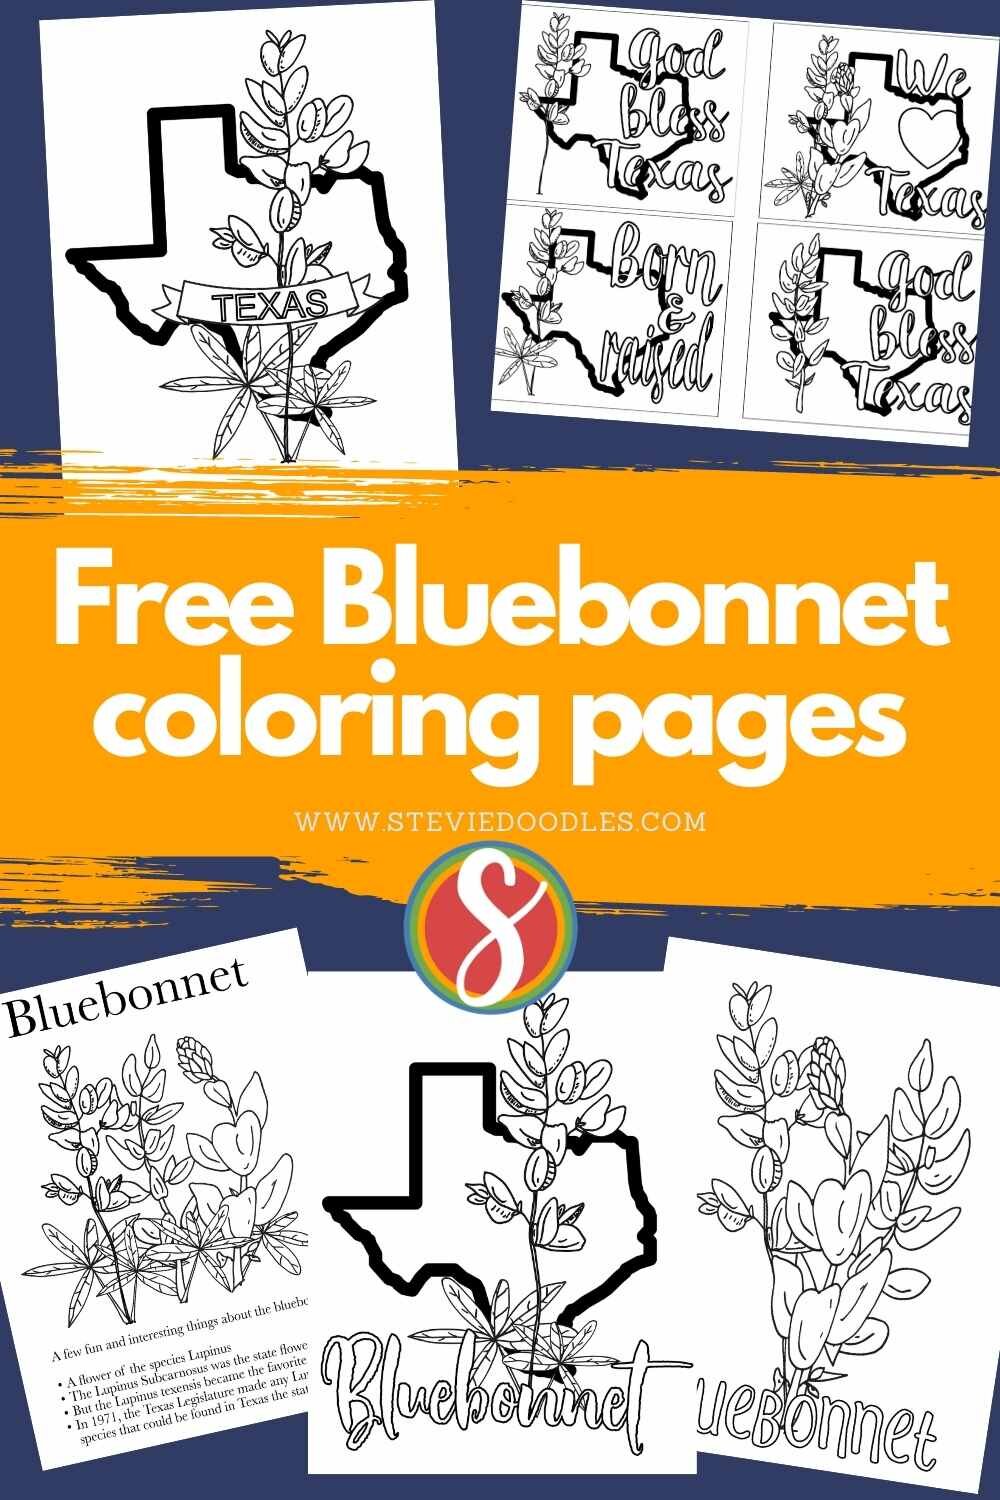 Free bluebonnet coloring pages â stevie doodles